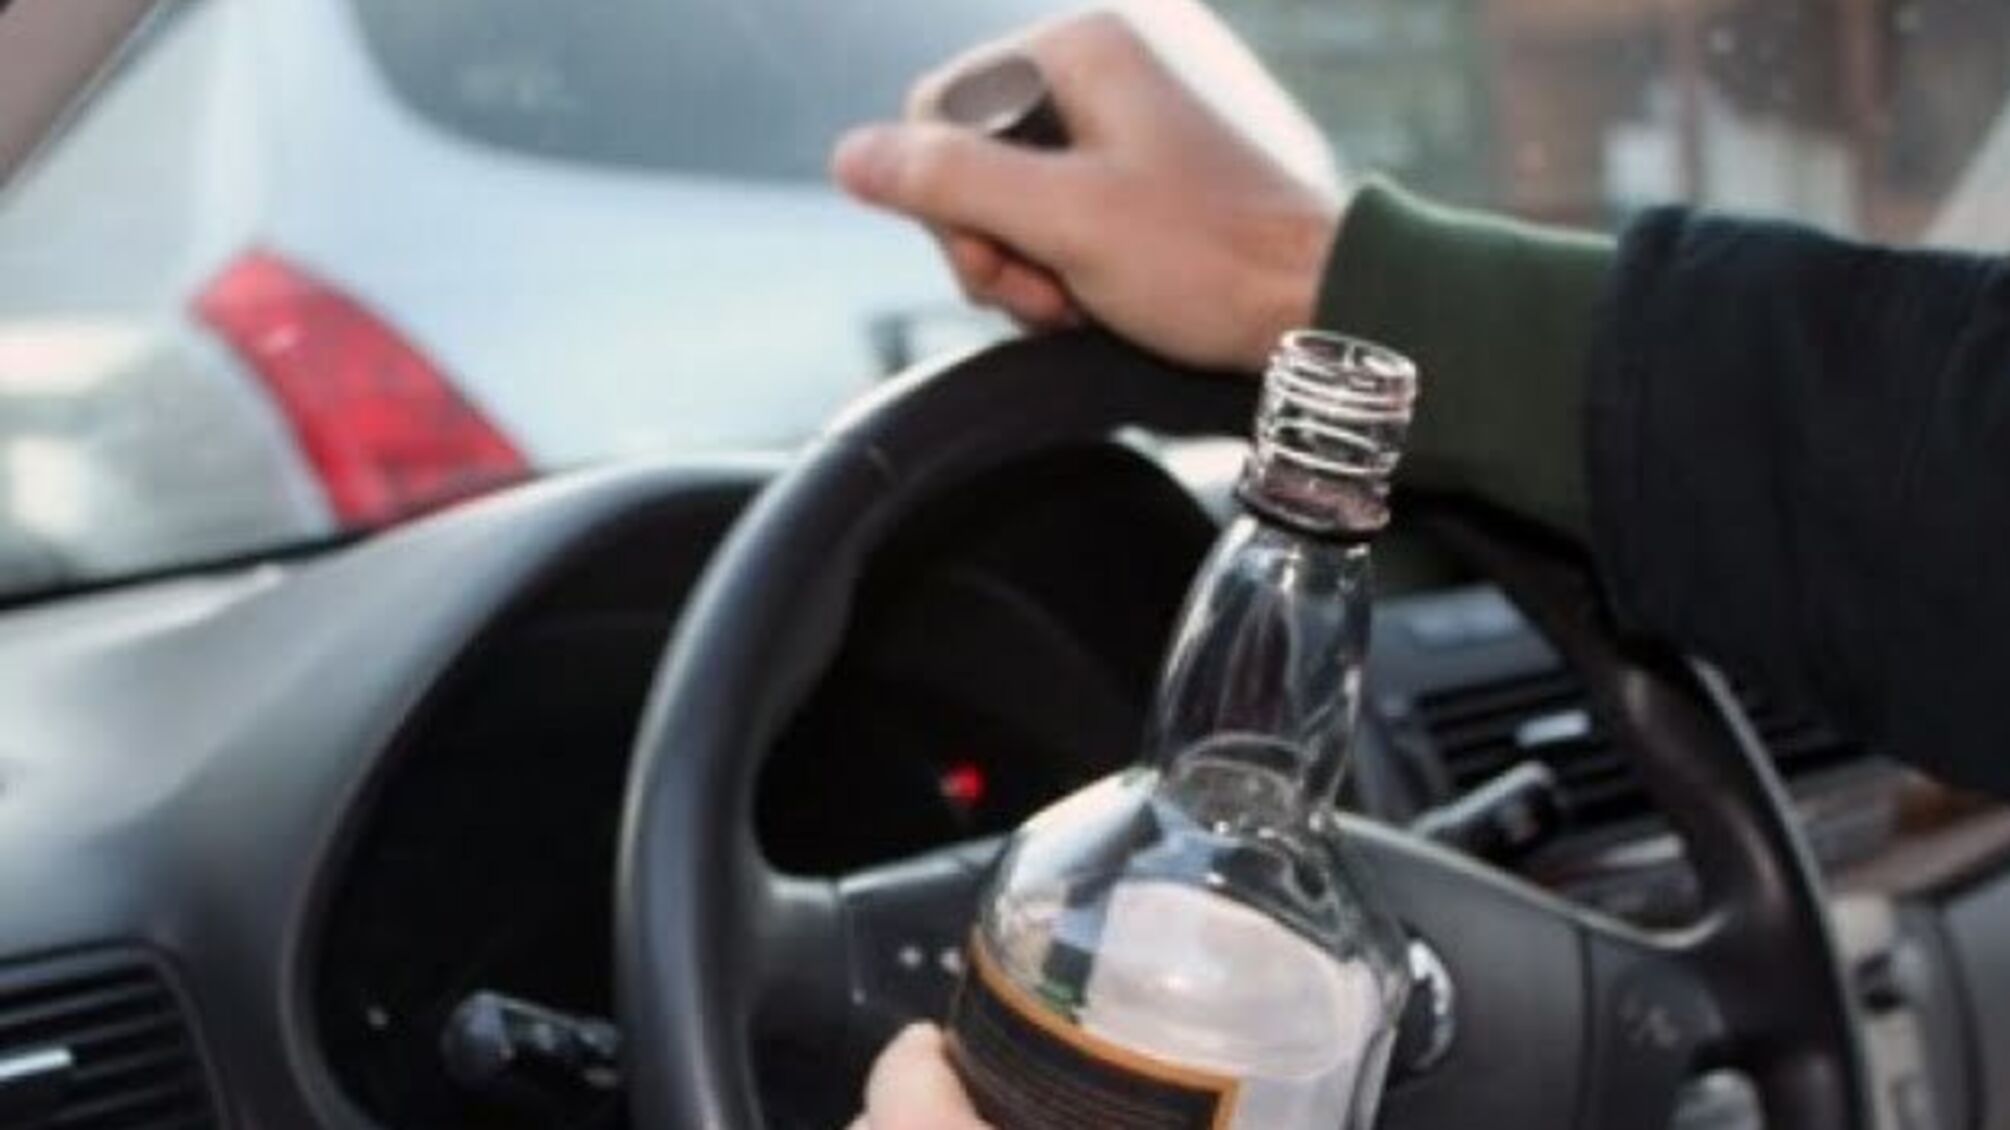 Поліція 1 січня склала 267 протоколів на п‘яних водіїв